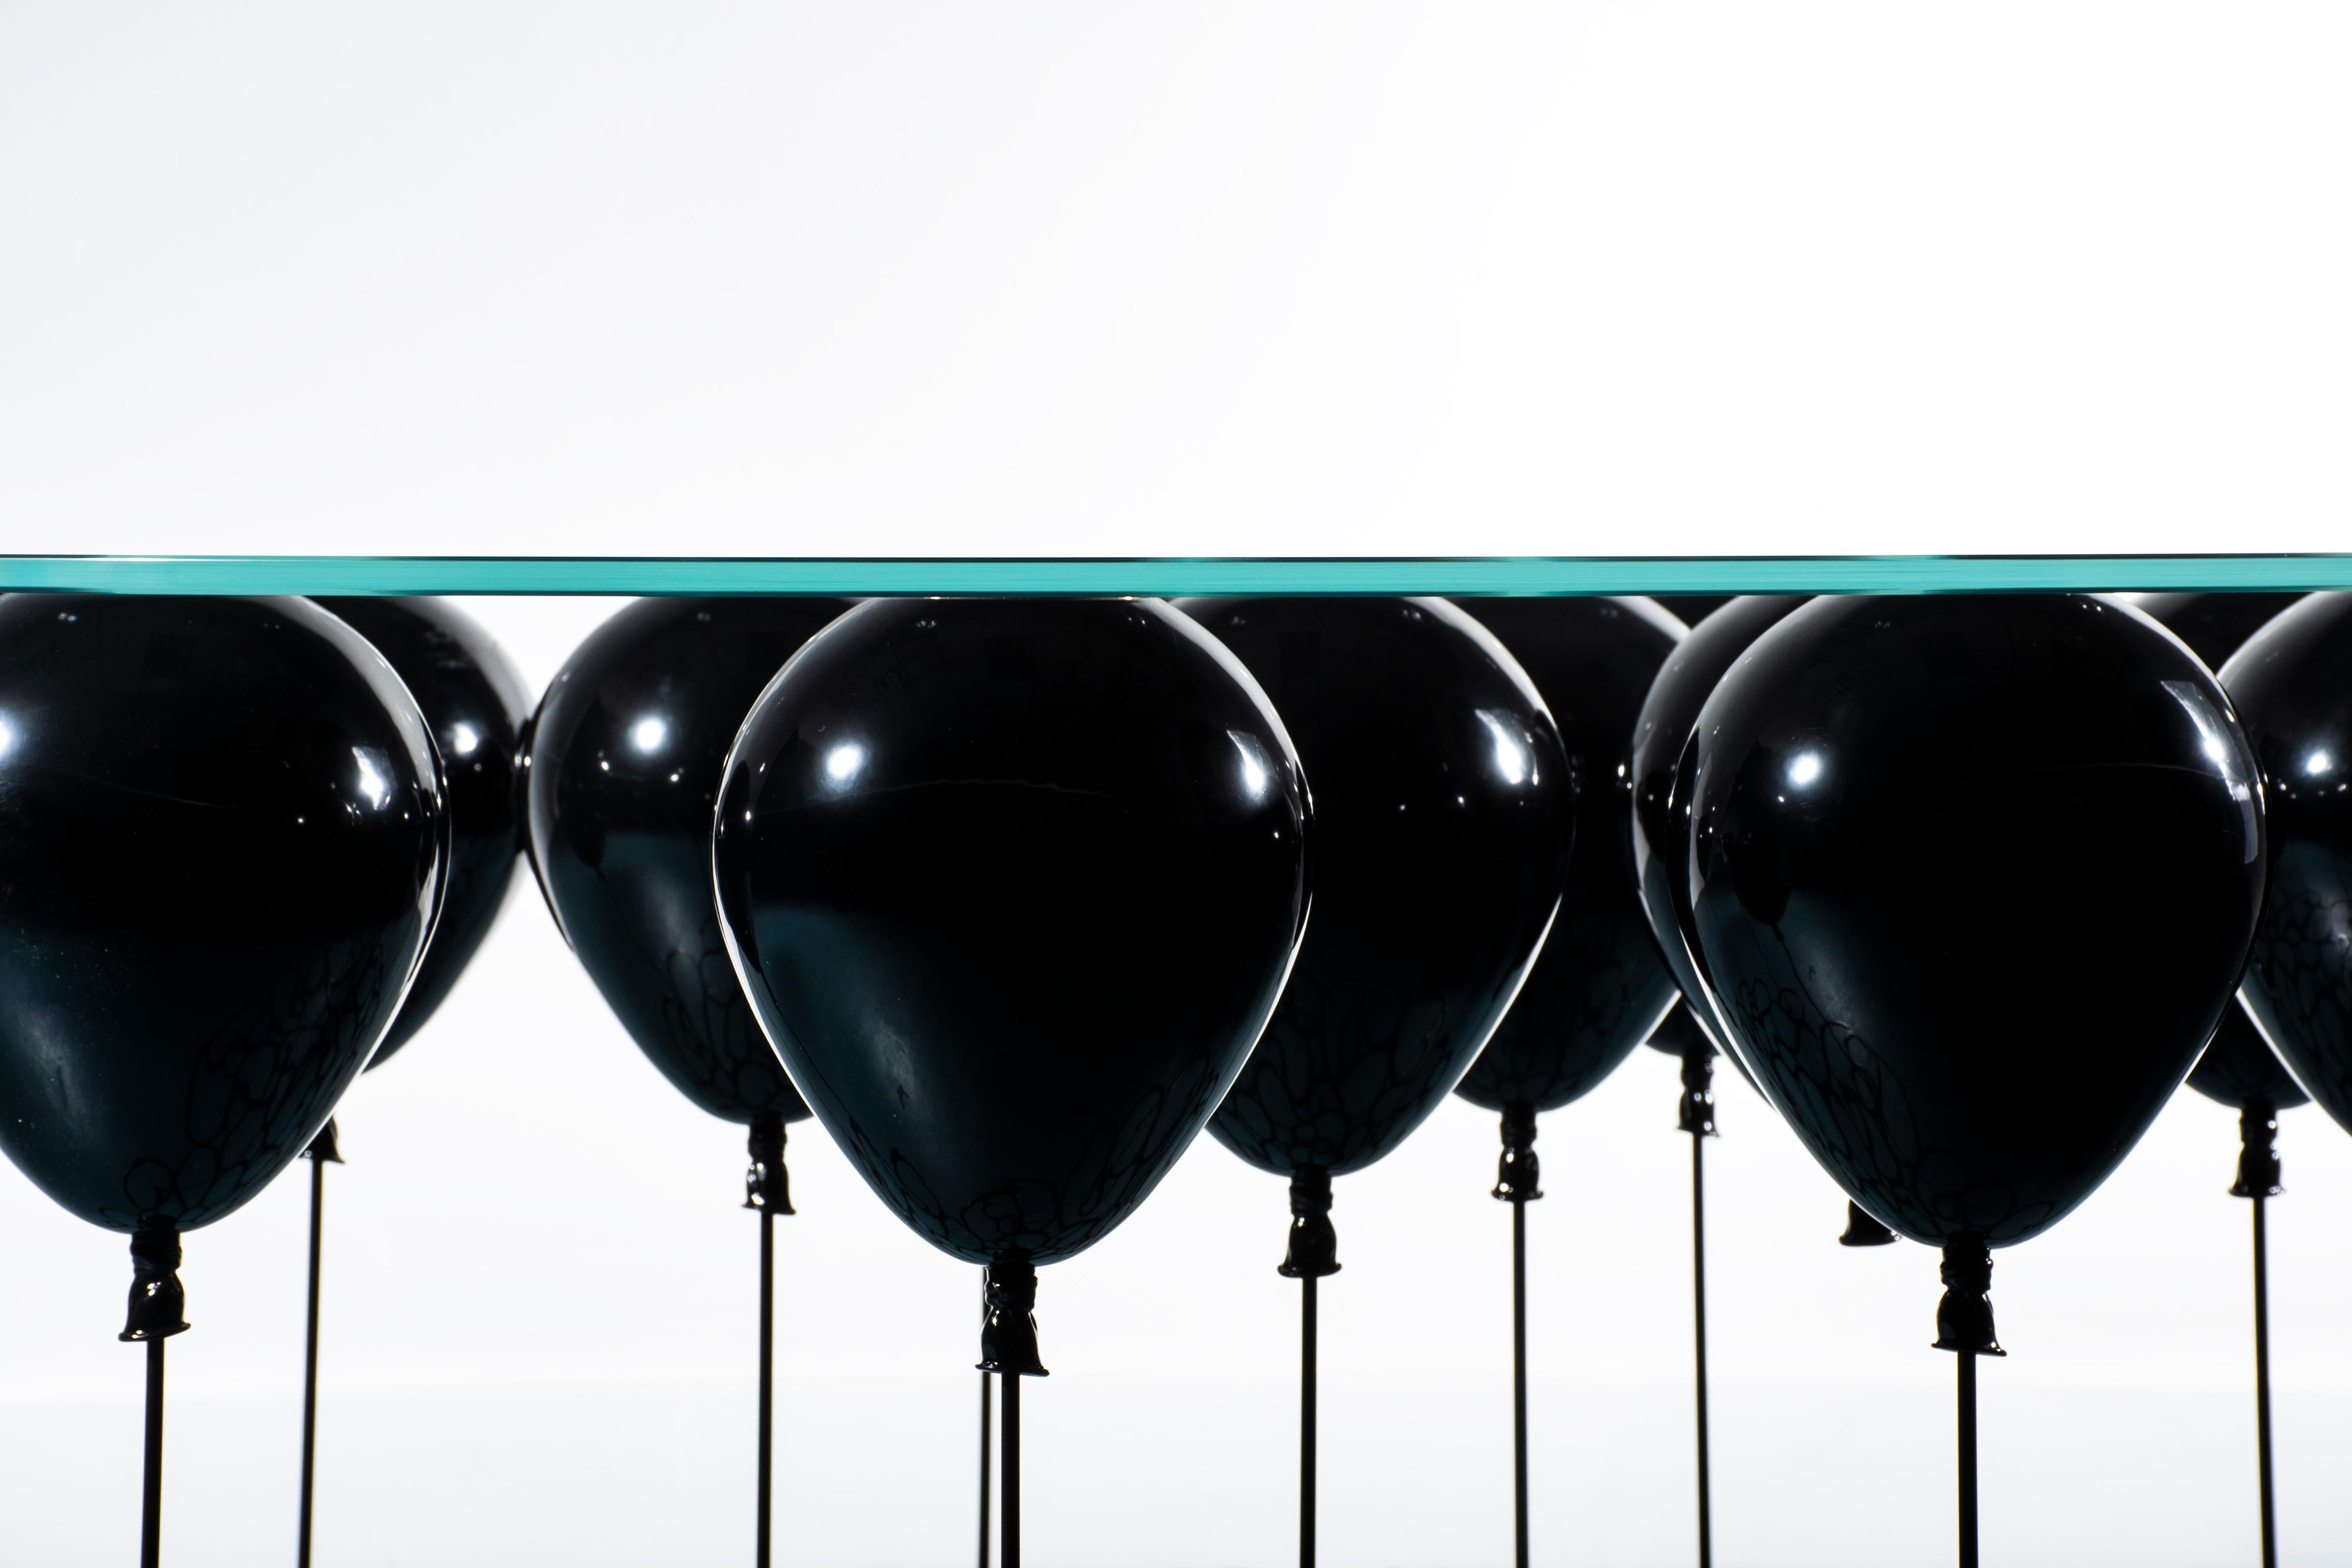 Pour ceux qui préfèrent un divertissement un peu plus sombre, The Up ! La table basse Balloon du célèbre designer britannique Christopher Duffy est devenue macabre avec une finition noire brillante, disponible à la fois sur les ballons et les